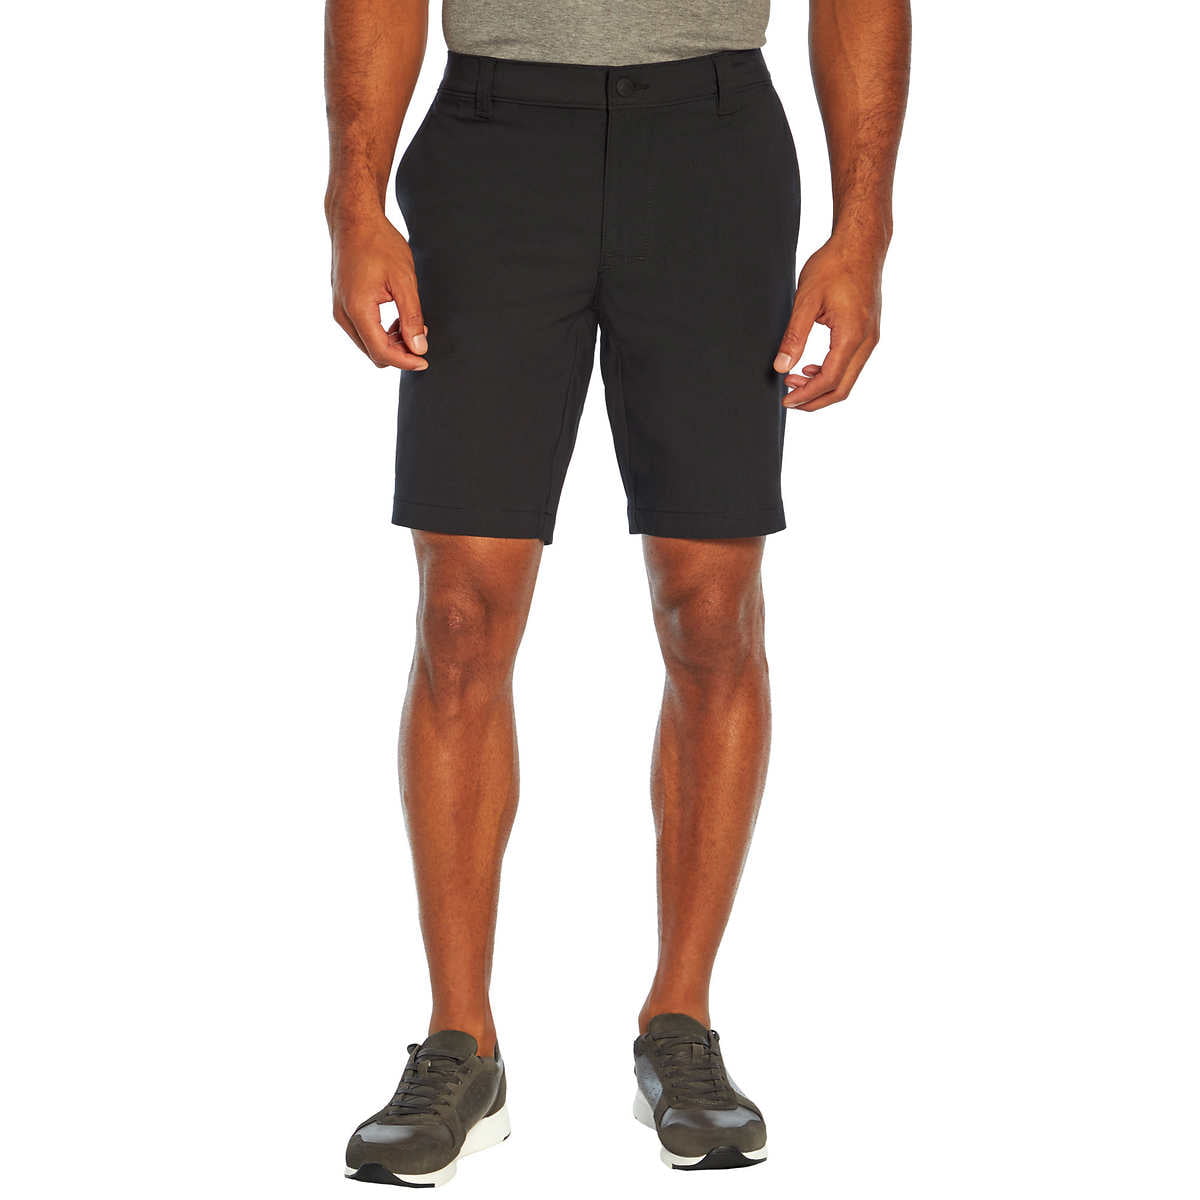 Banana Republic Men's Flat Front Short – Black, 36 - Walmart.com